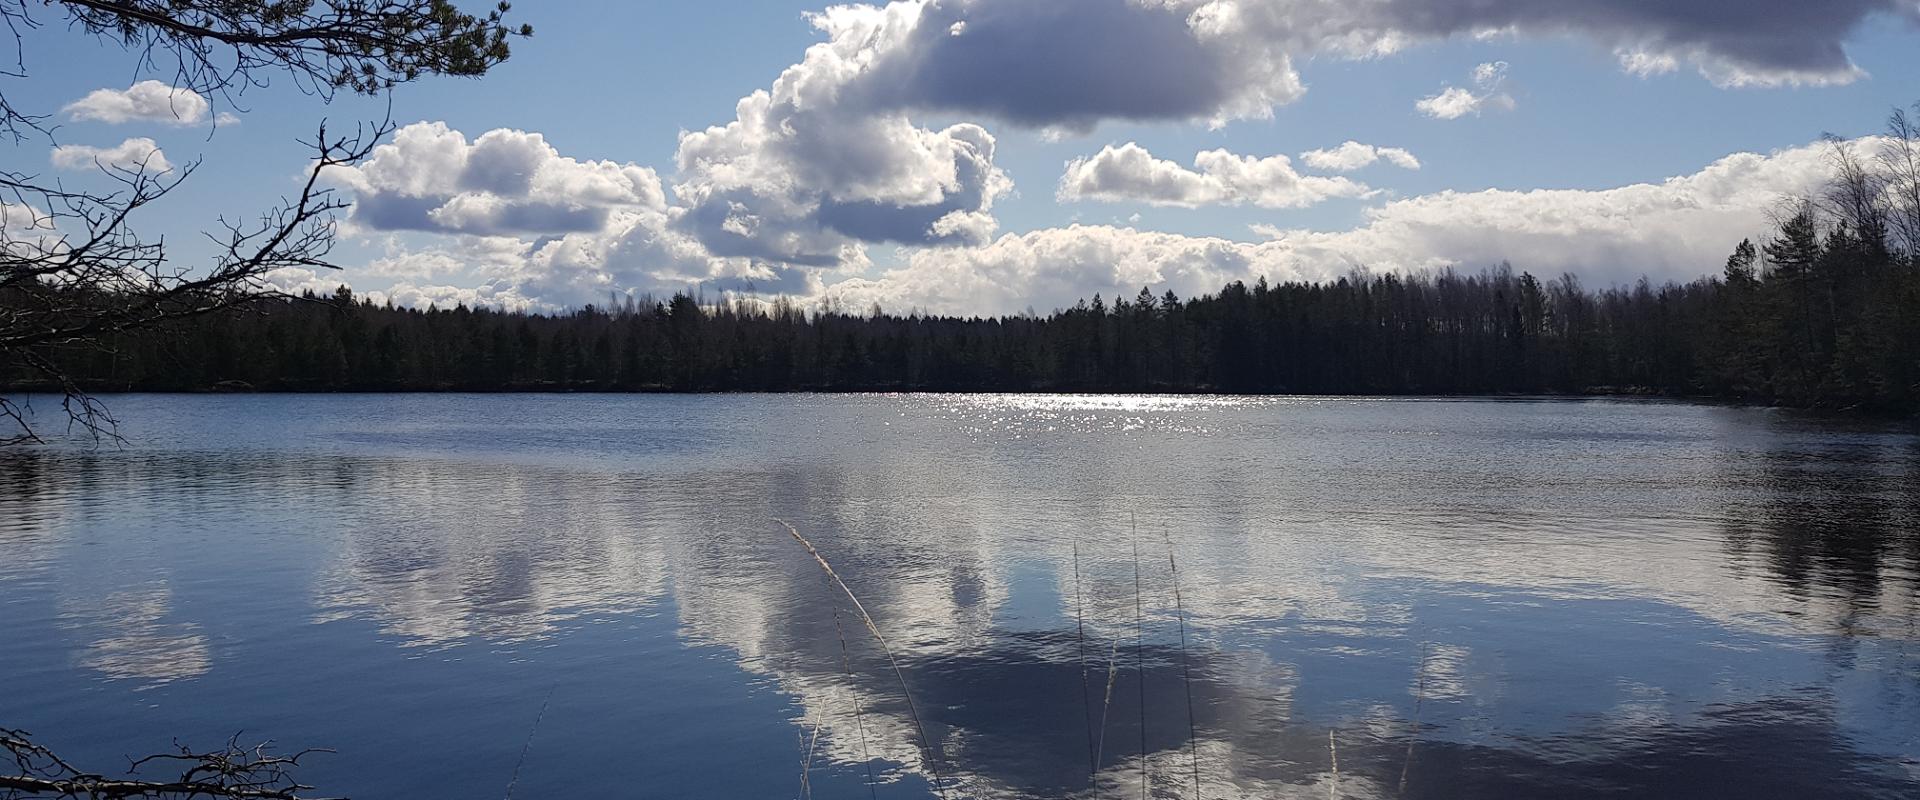 Alutagusen kunnassa sijaitseva Kurtnan järvistö on Viron järvisin alue, jossa noin 30 km2 alueella on noin 42 järveä. Järviä ympäröivät alueet ovat su